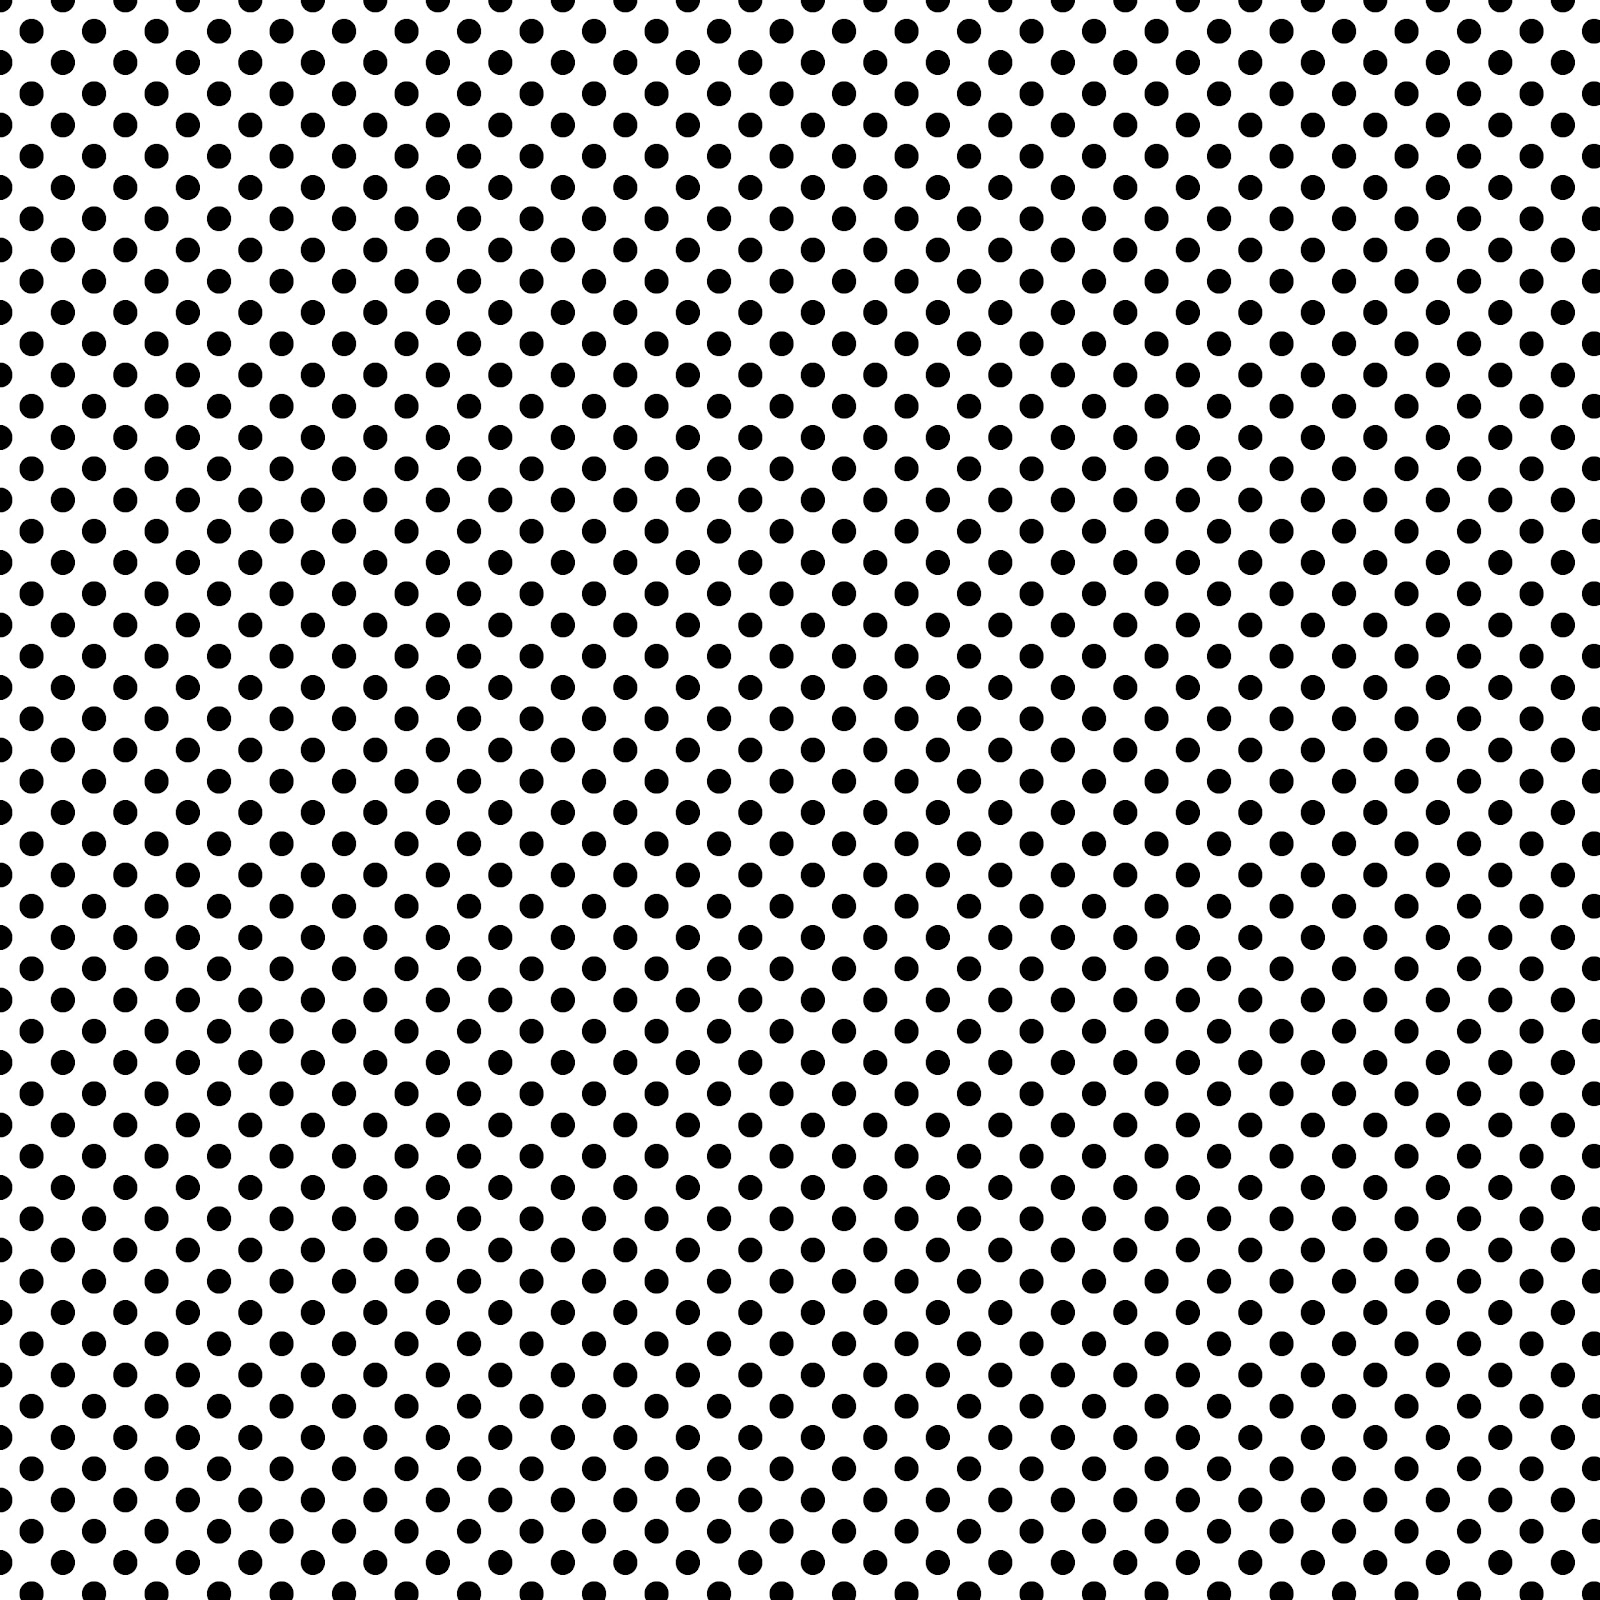 Black and White Polka Dot Photo